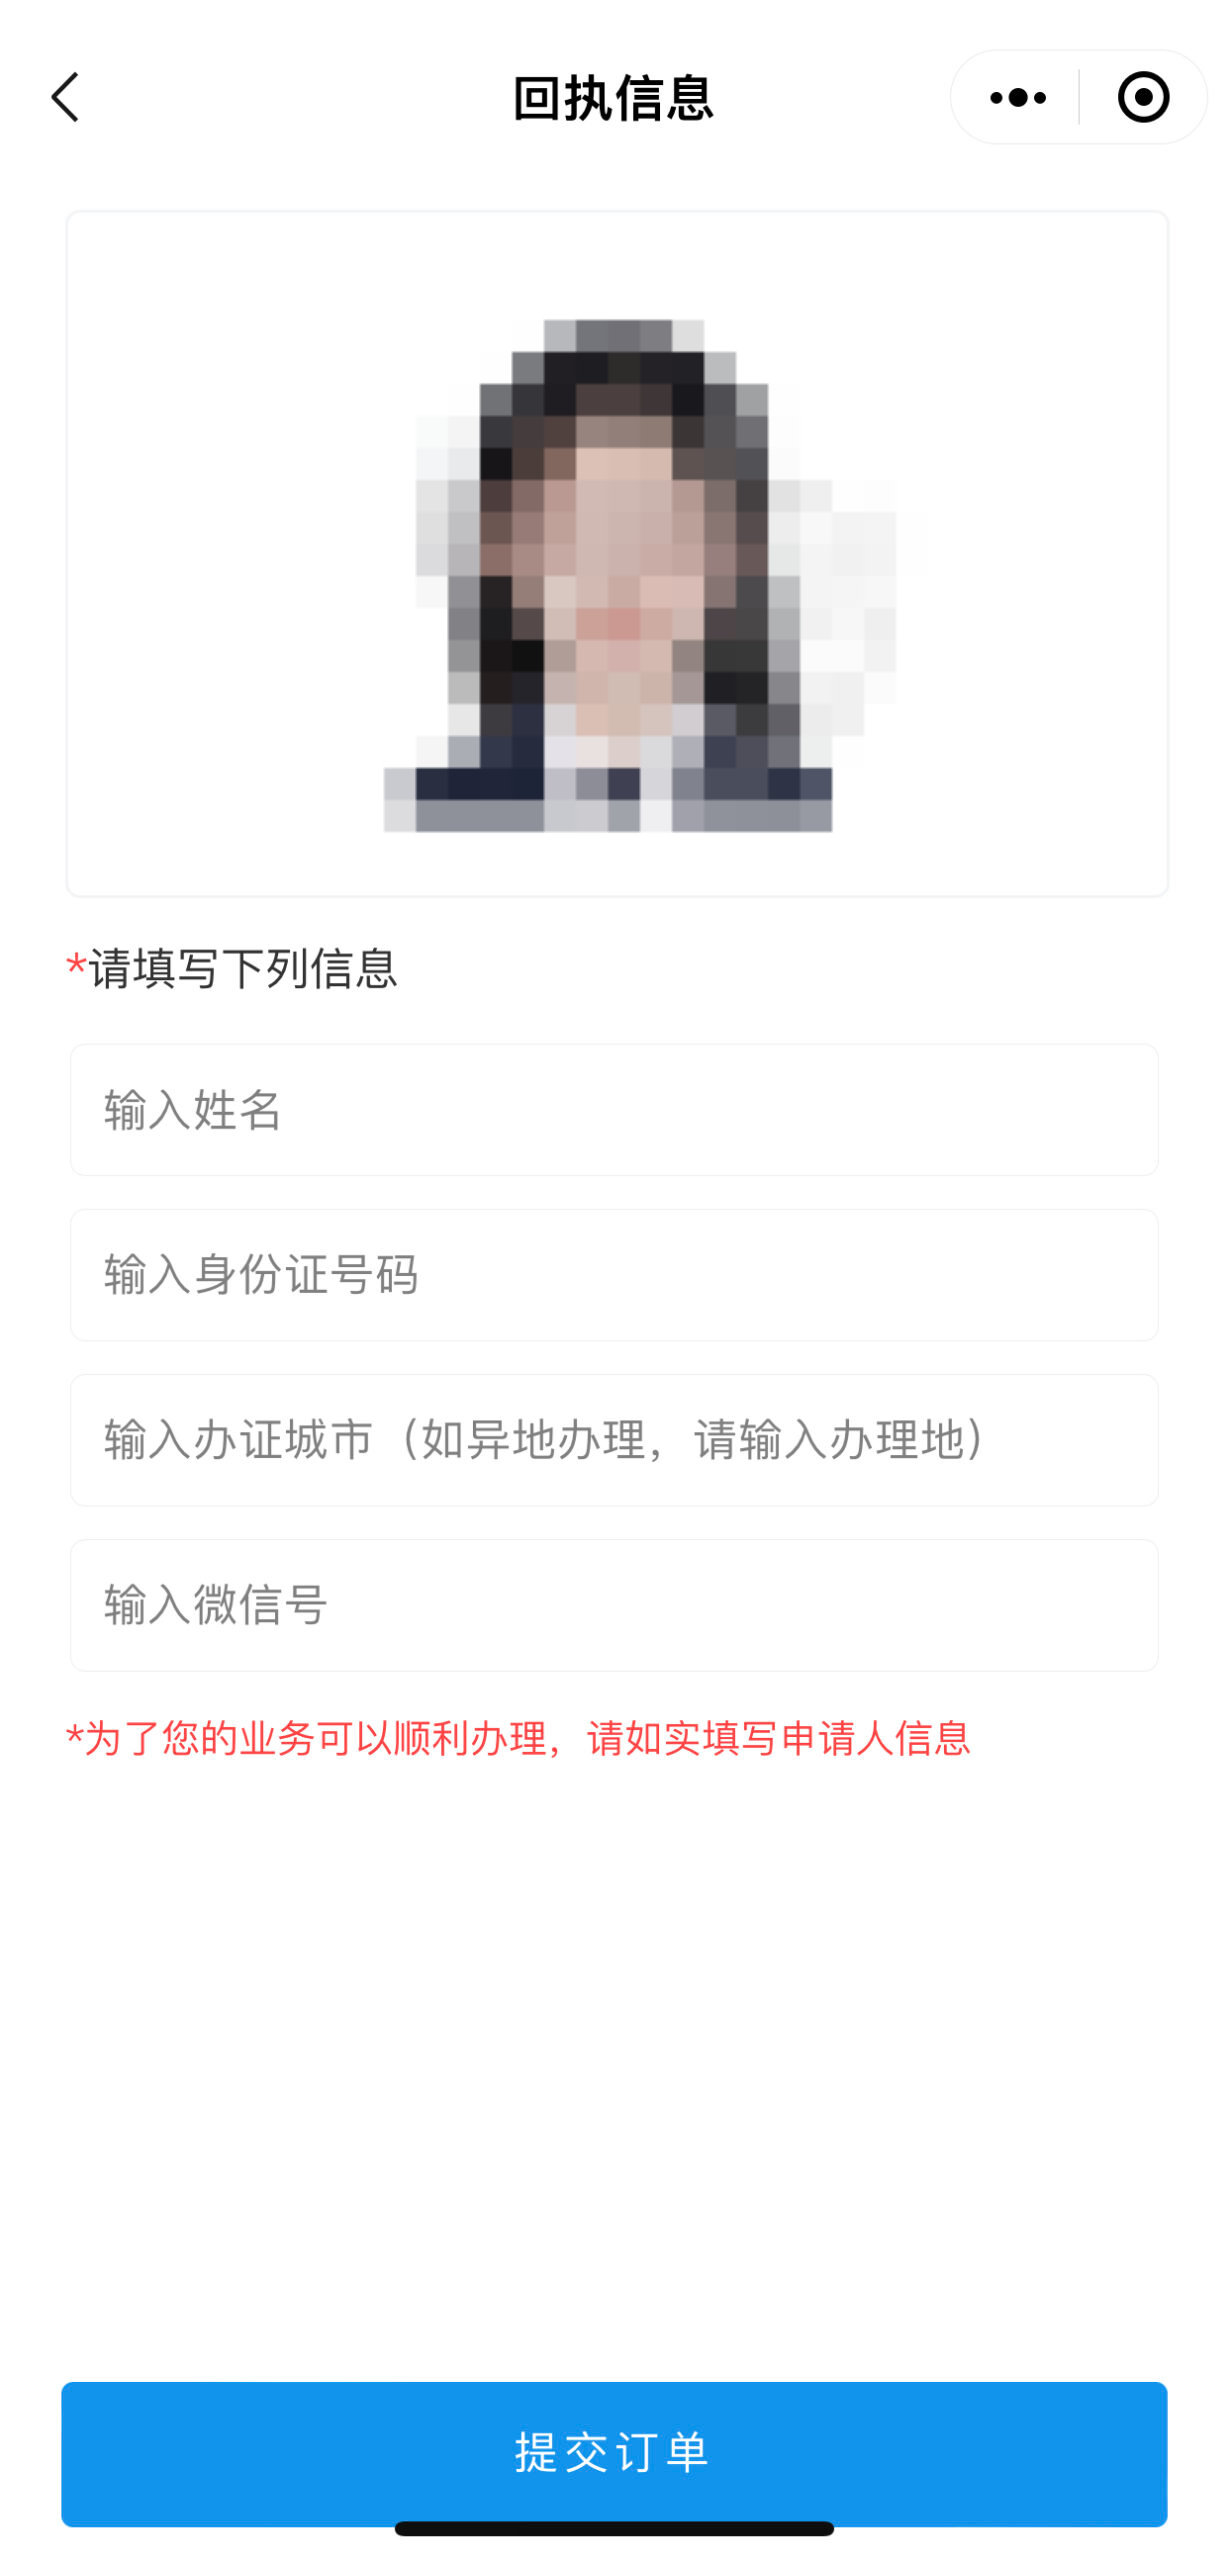 广东省身份证照片采集去哪里拍